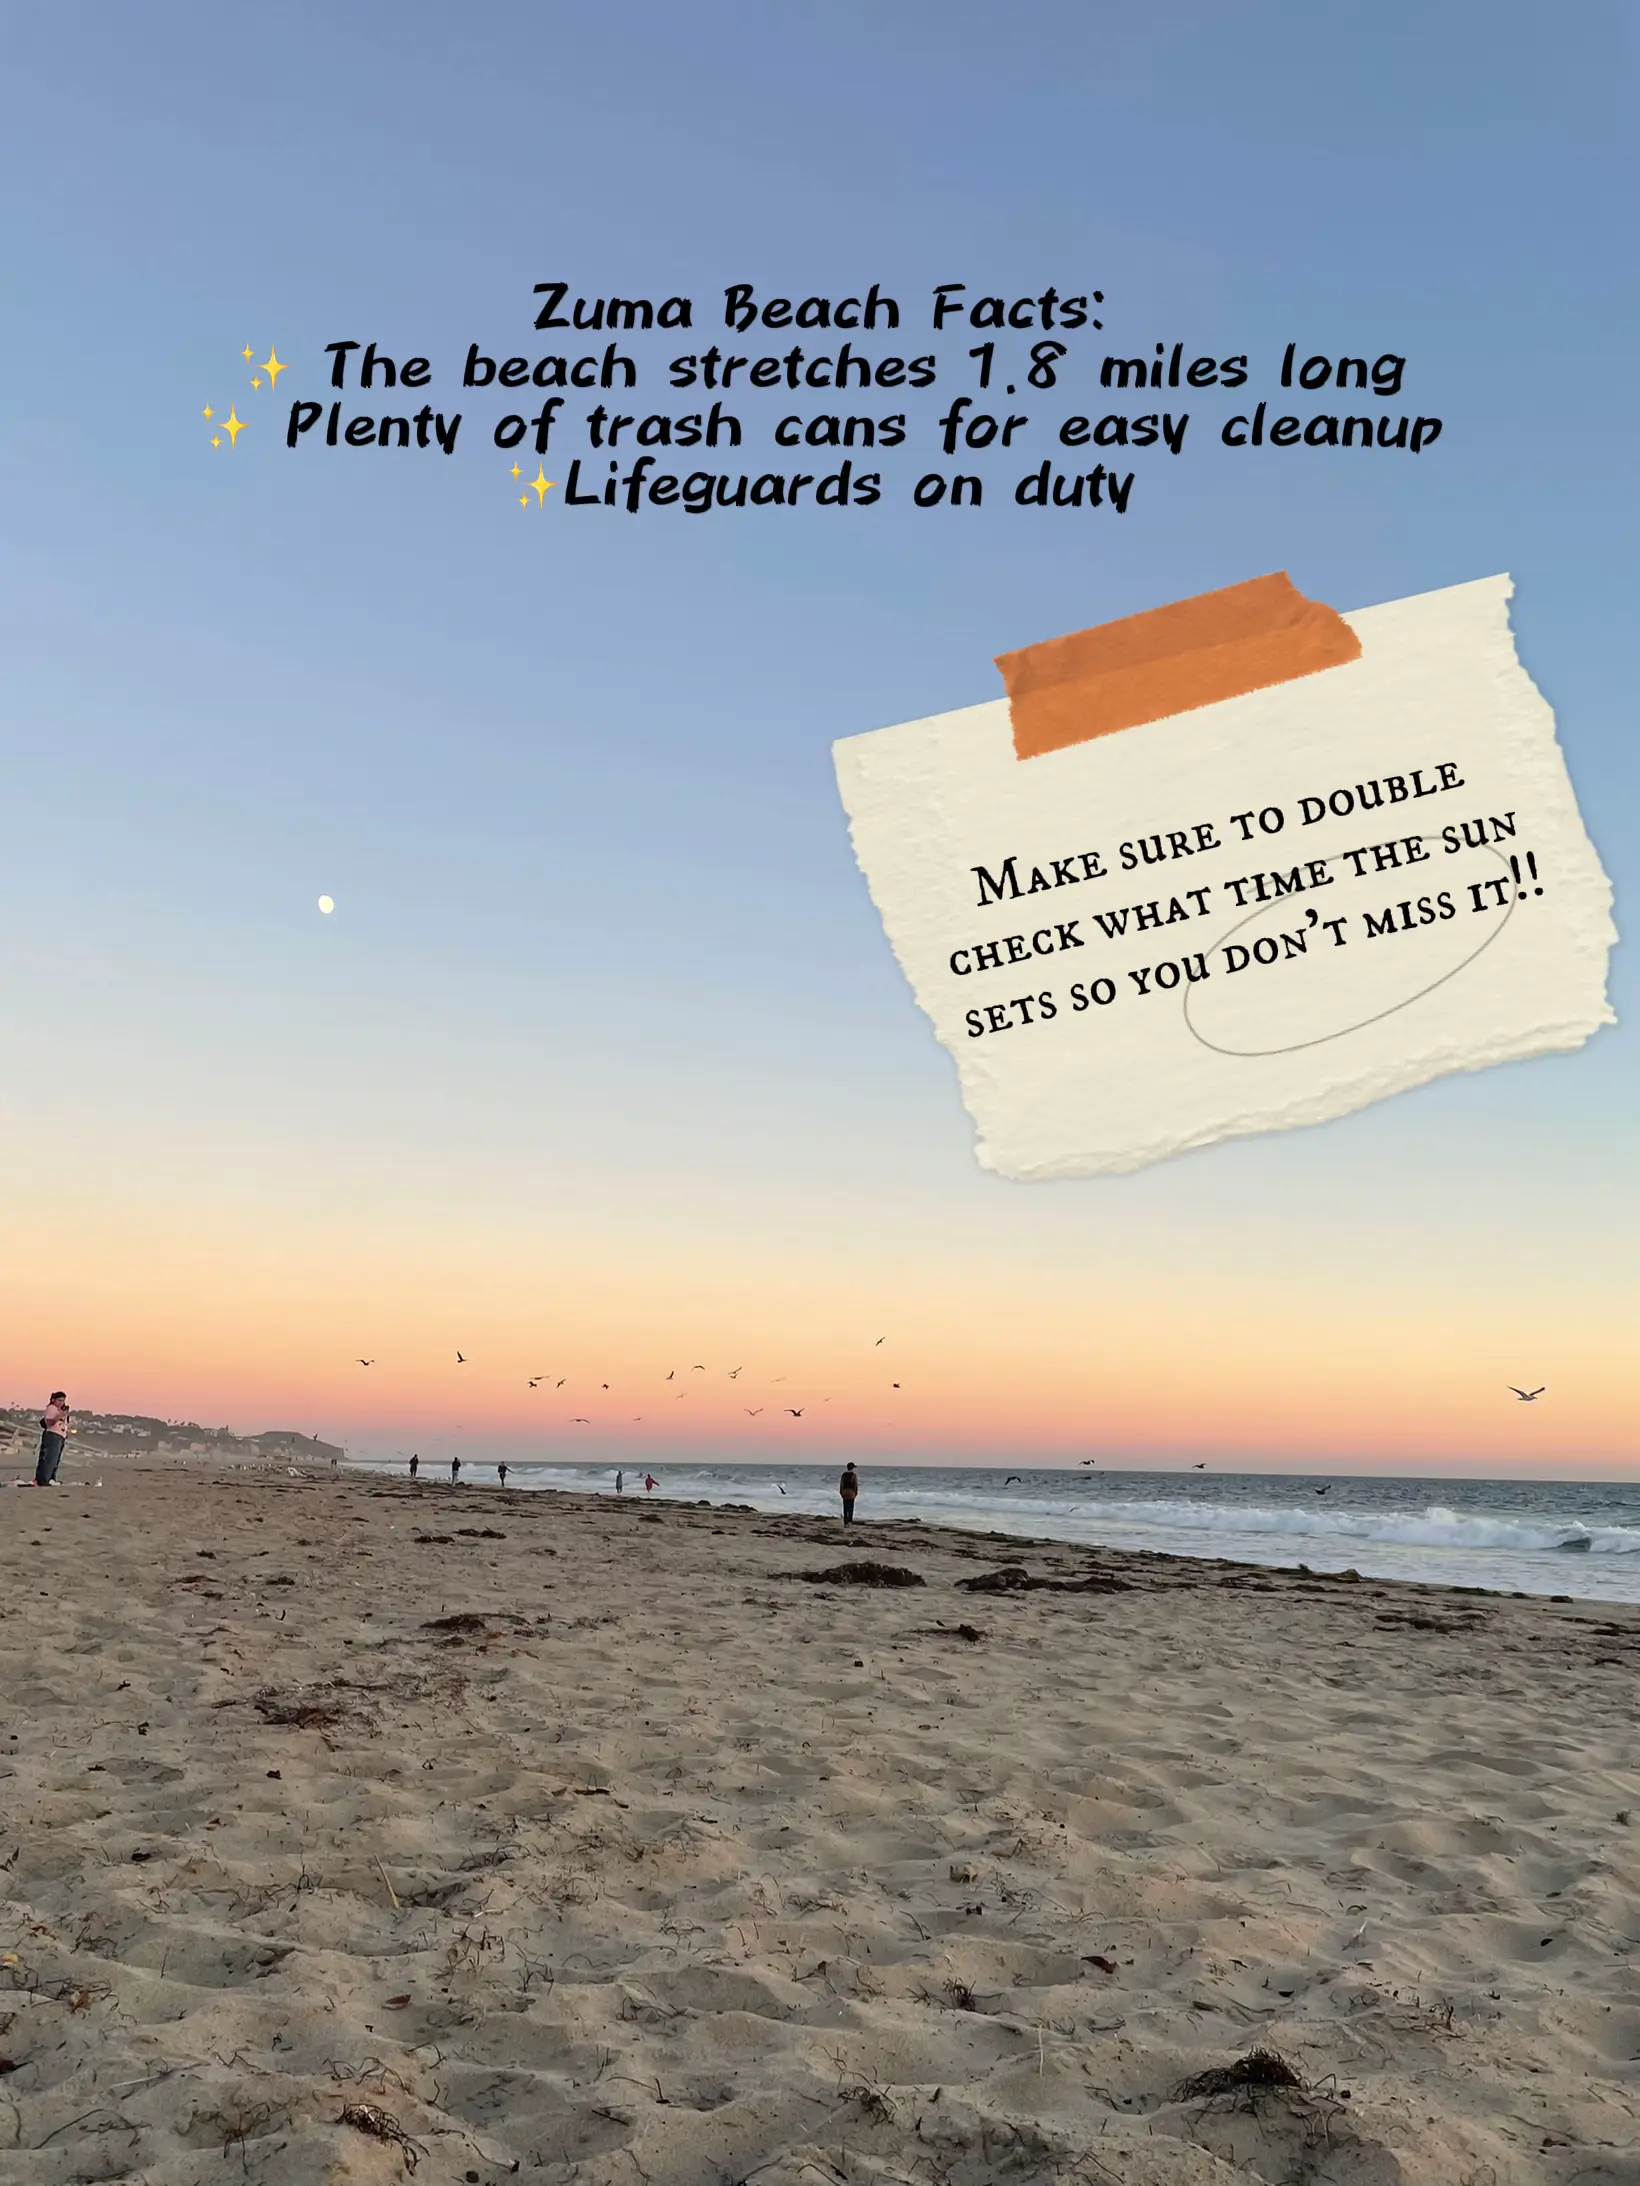 Visit Zuma Beach: A Coastal Gem in Malibu